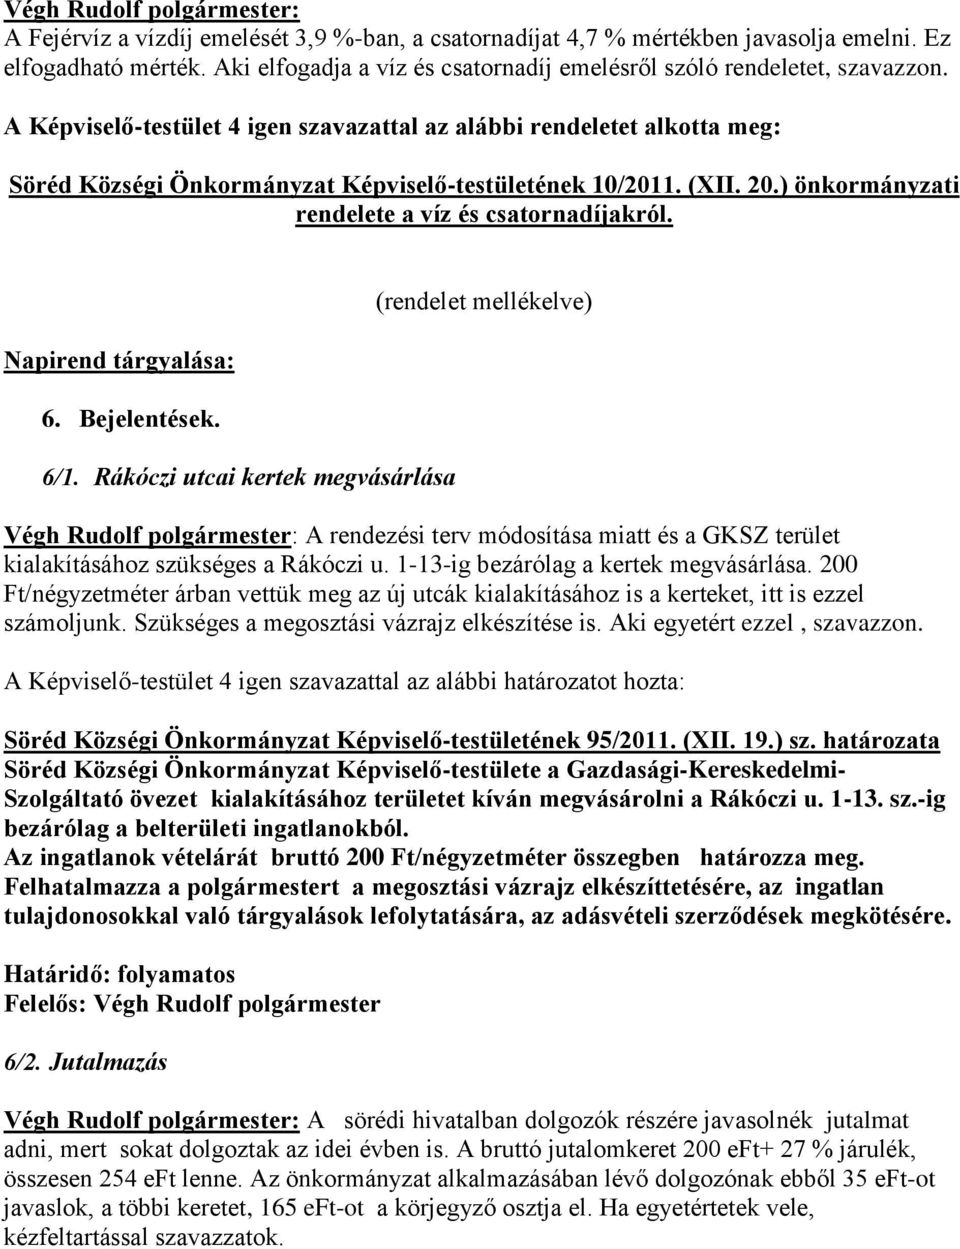 A Képviselő-testület 4 igen szavazattal az alábbi rendeletet alkotta meg: Söréd Községi Önkormányzat Képviselő-testületének 10/2011. (XII. 20.) önkormányzati rendelete a víz és csatornadíjakról.